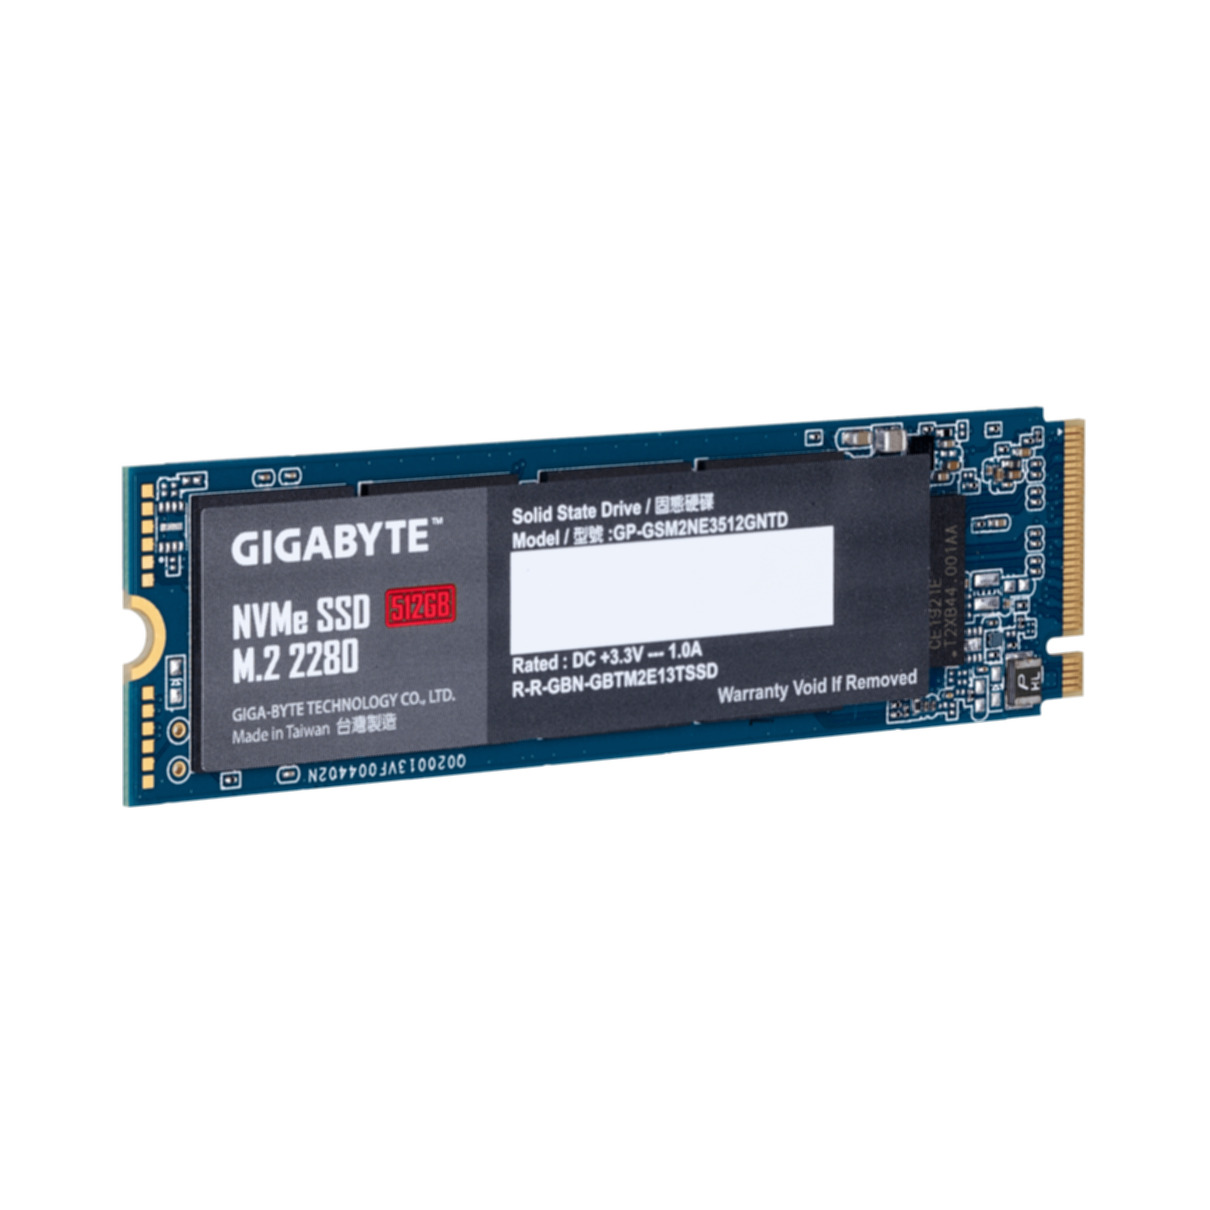 GB, SSD, GP-GSM2NE3512GNTD, 512 GIGABYTE intern